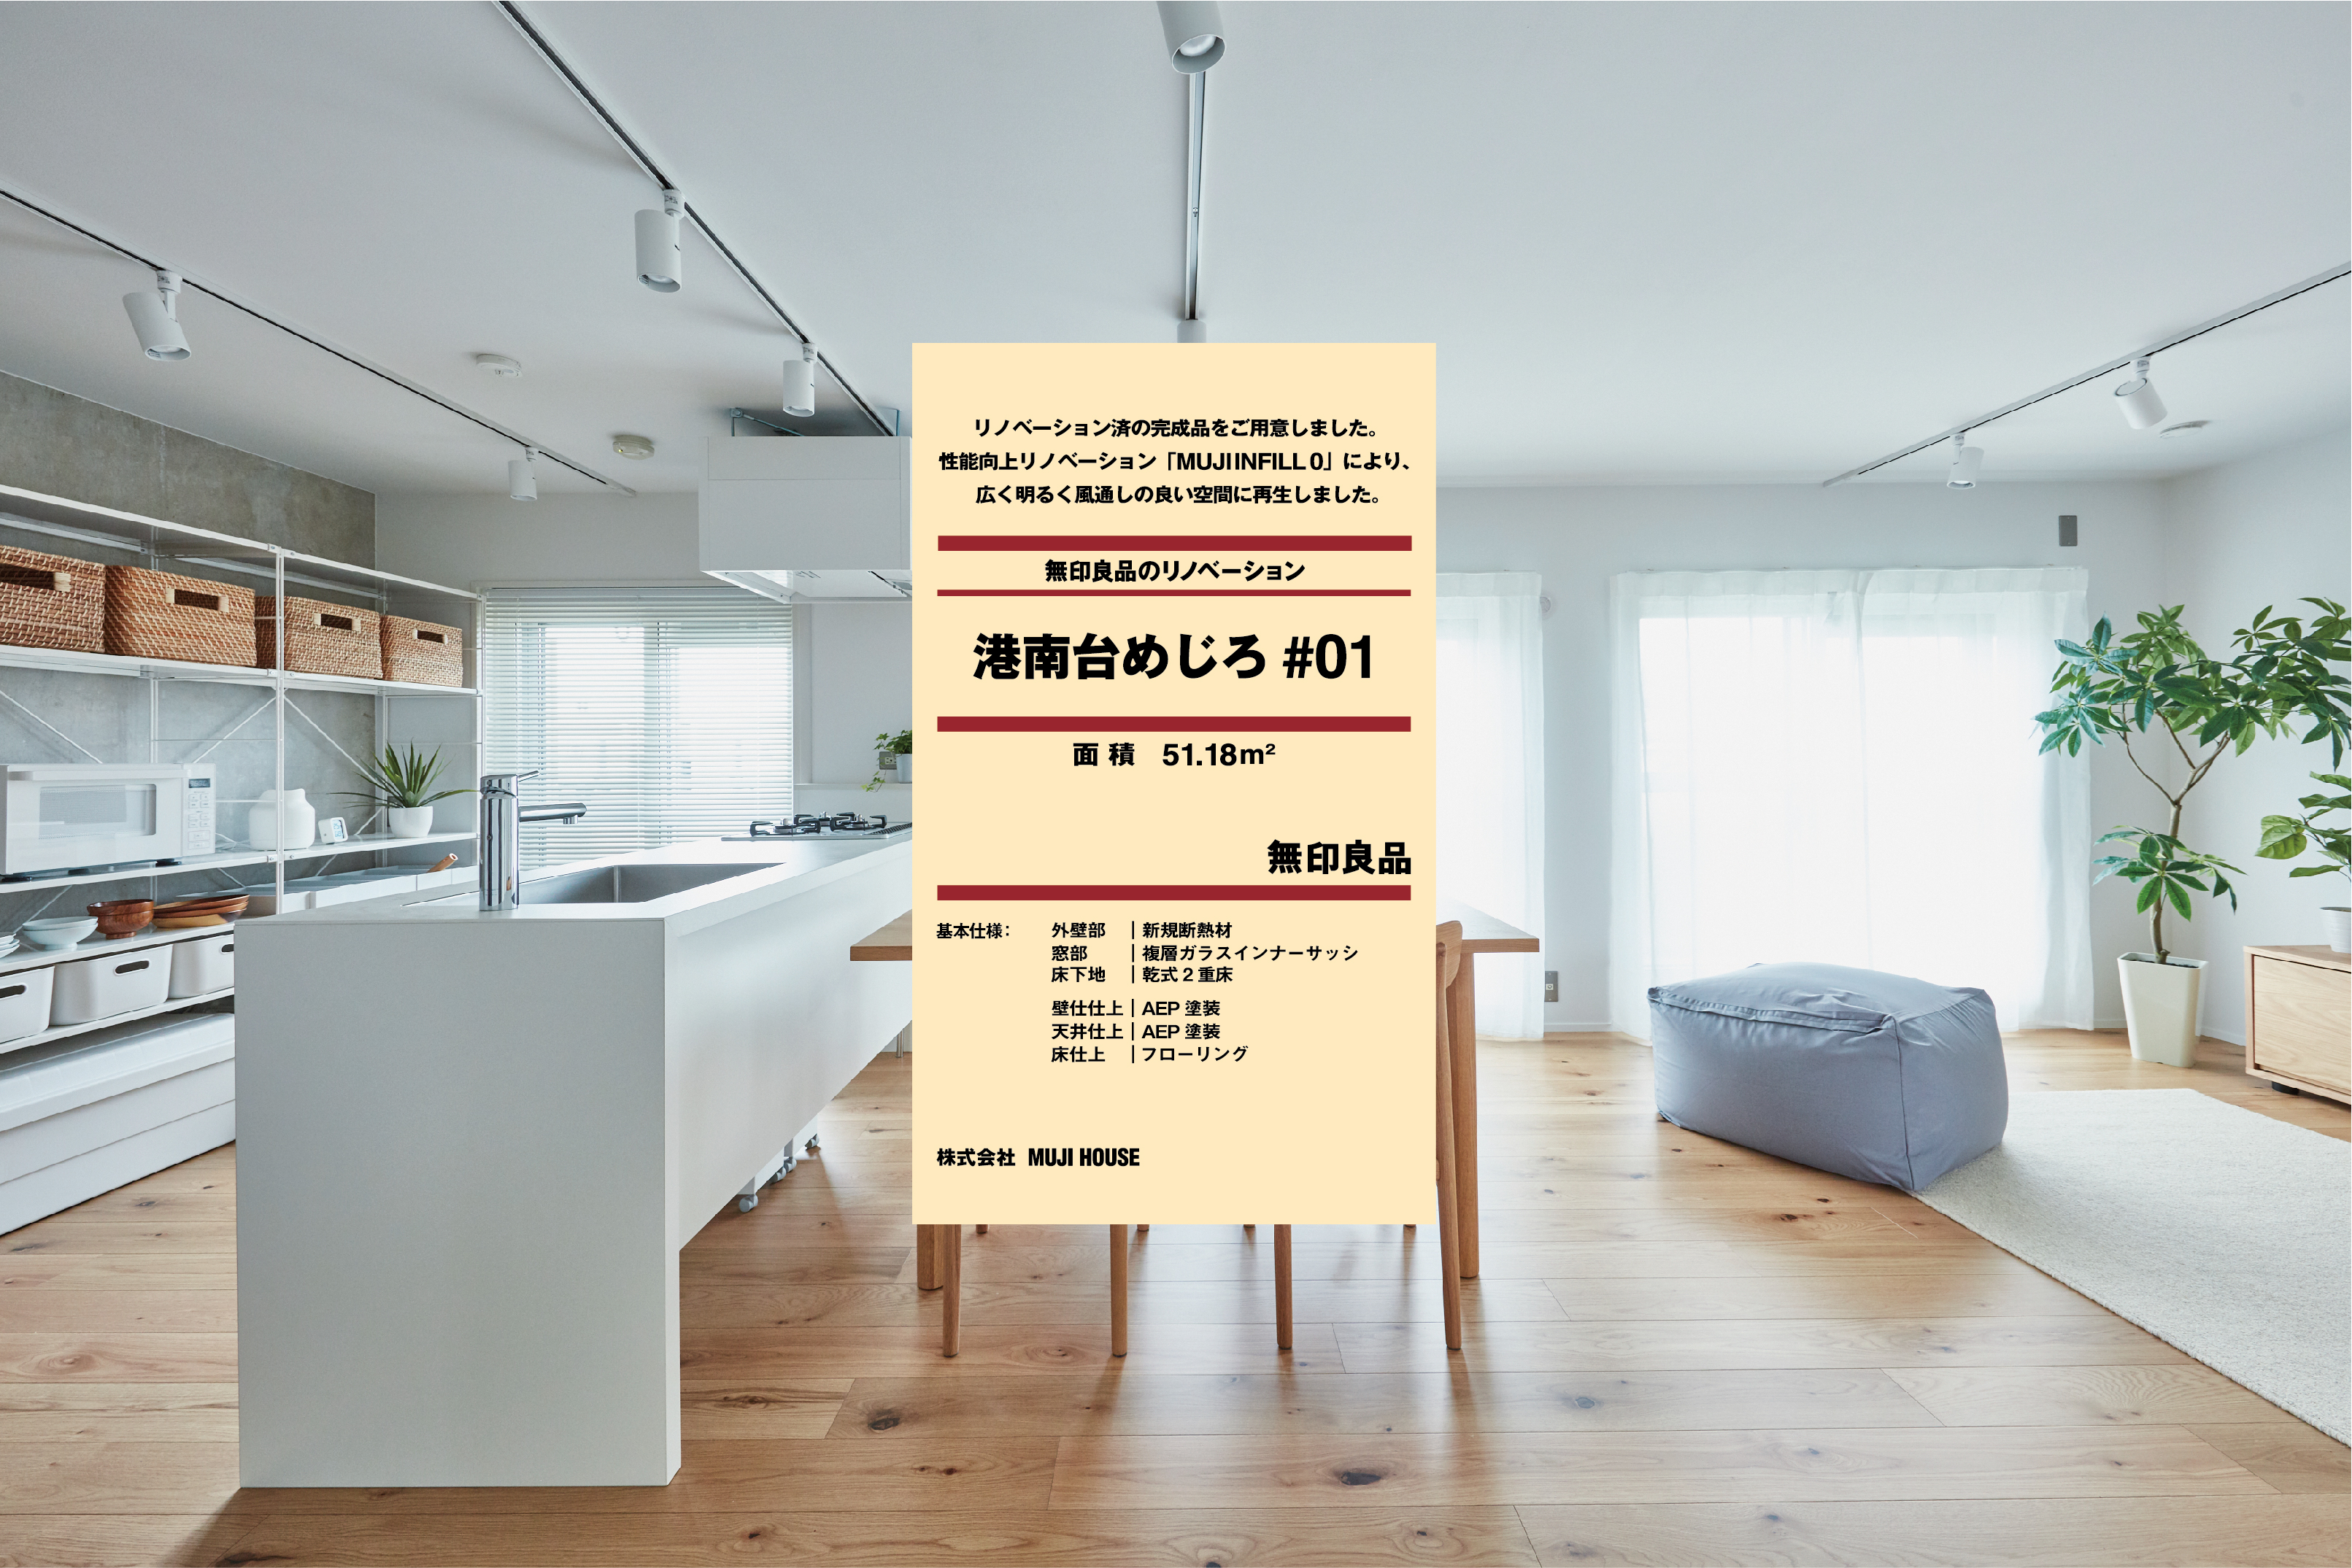 無印良品が再生した団地 マンション住戸を発売 株式会社 Muji Houseのプレスリリース